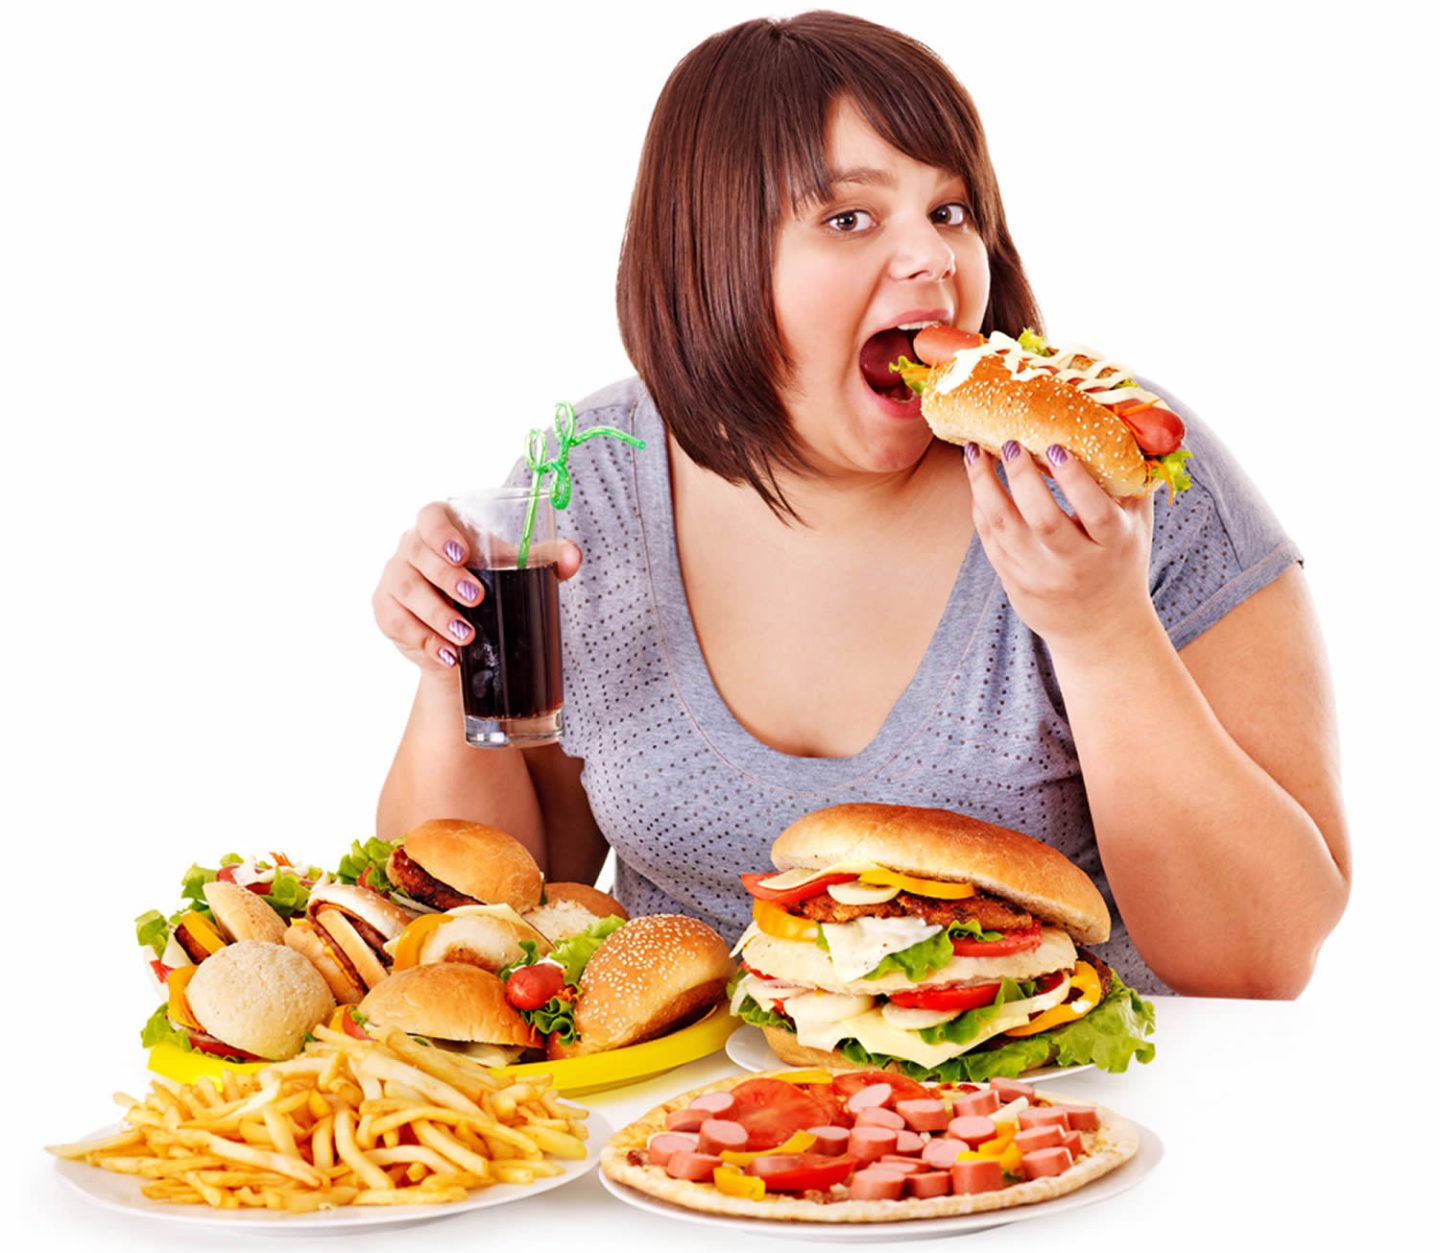 اضطراب نهم الطعام: الأسباب والأعراض والتشخيص والعلاج